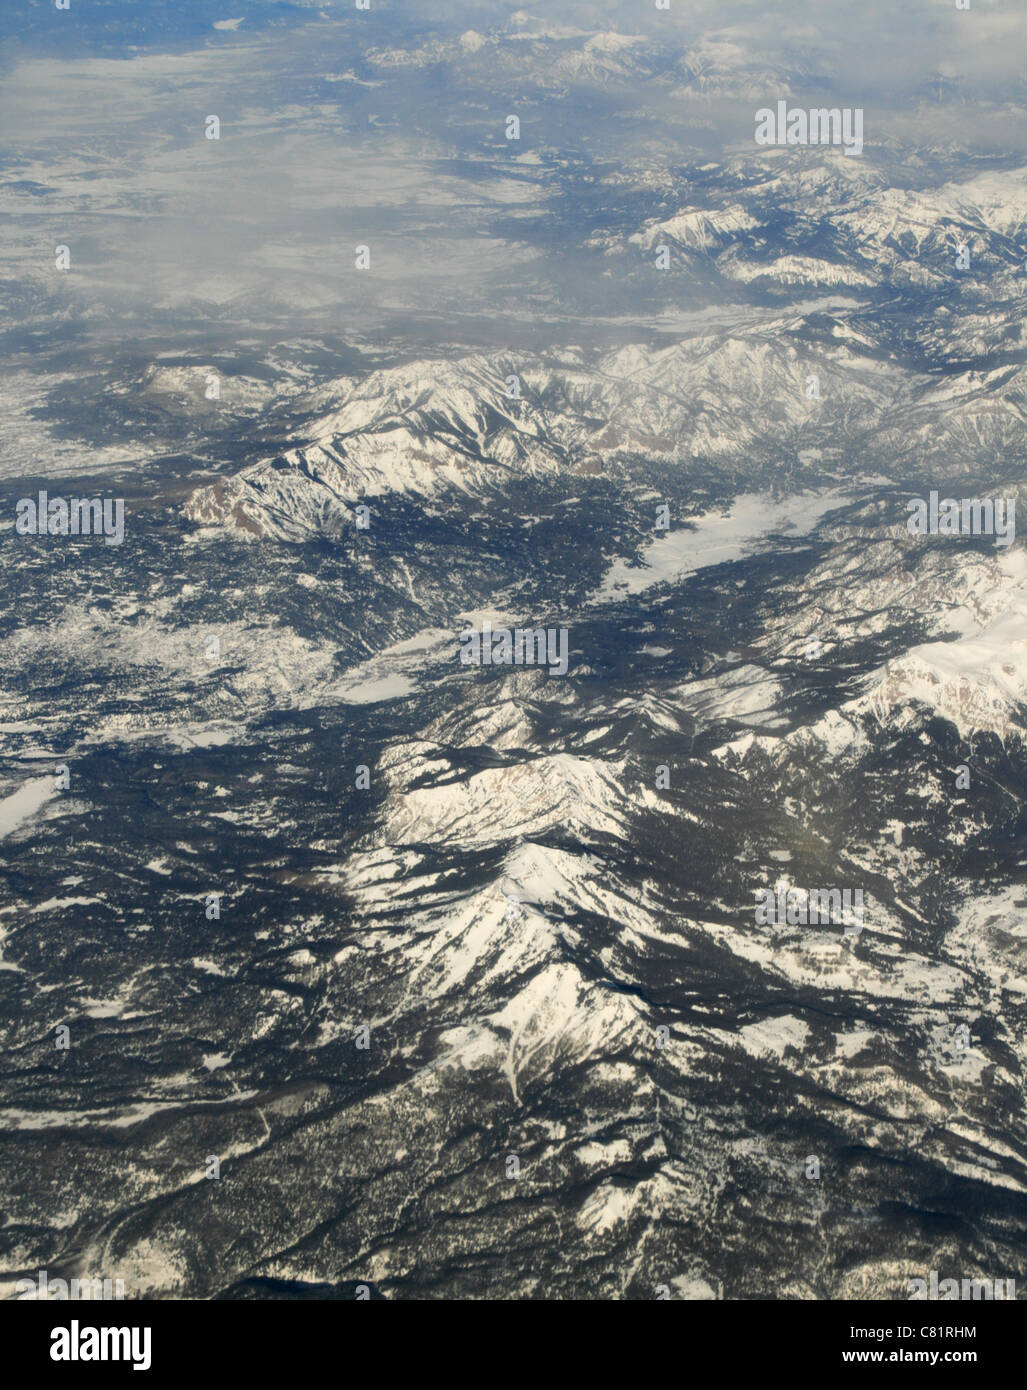 Fotografía aérea de las montañas rocosas en el invierno con picos nevados y valles Foto de stock